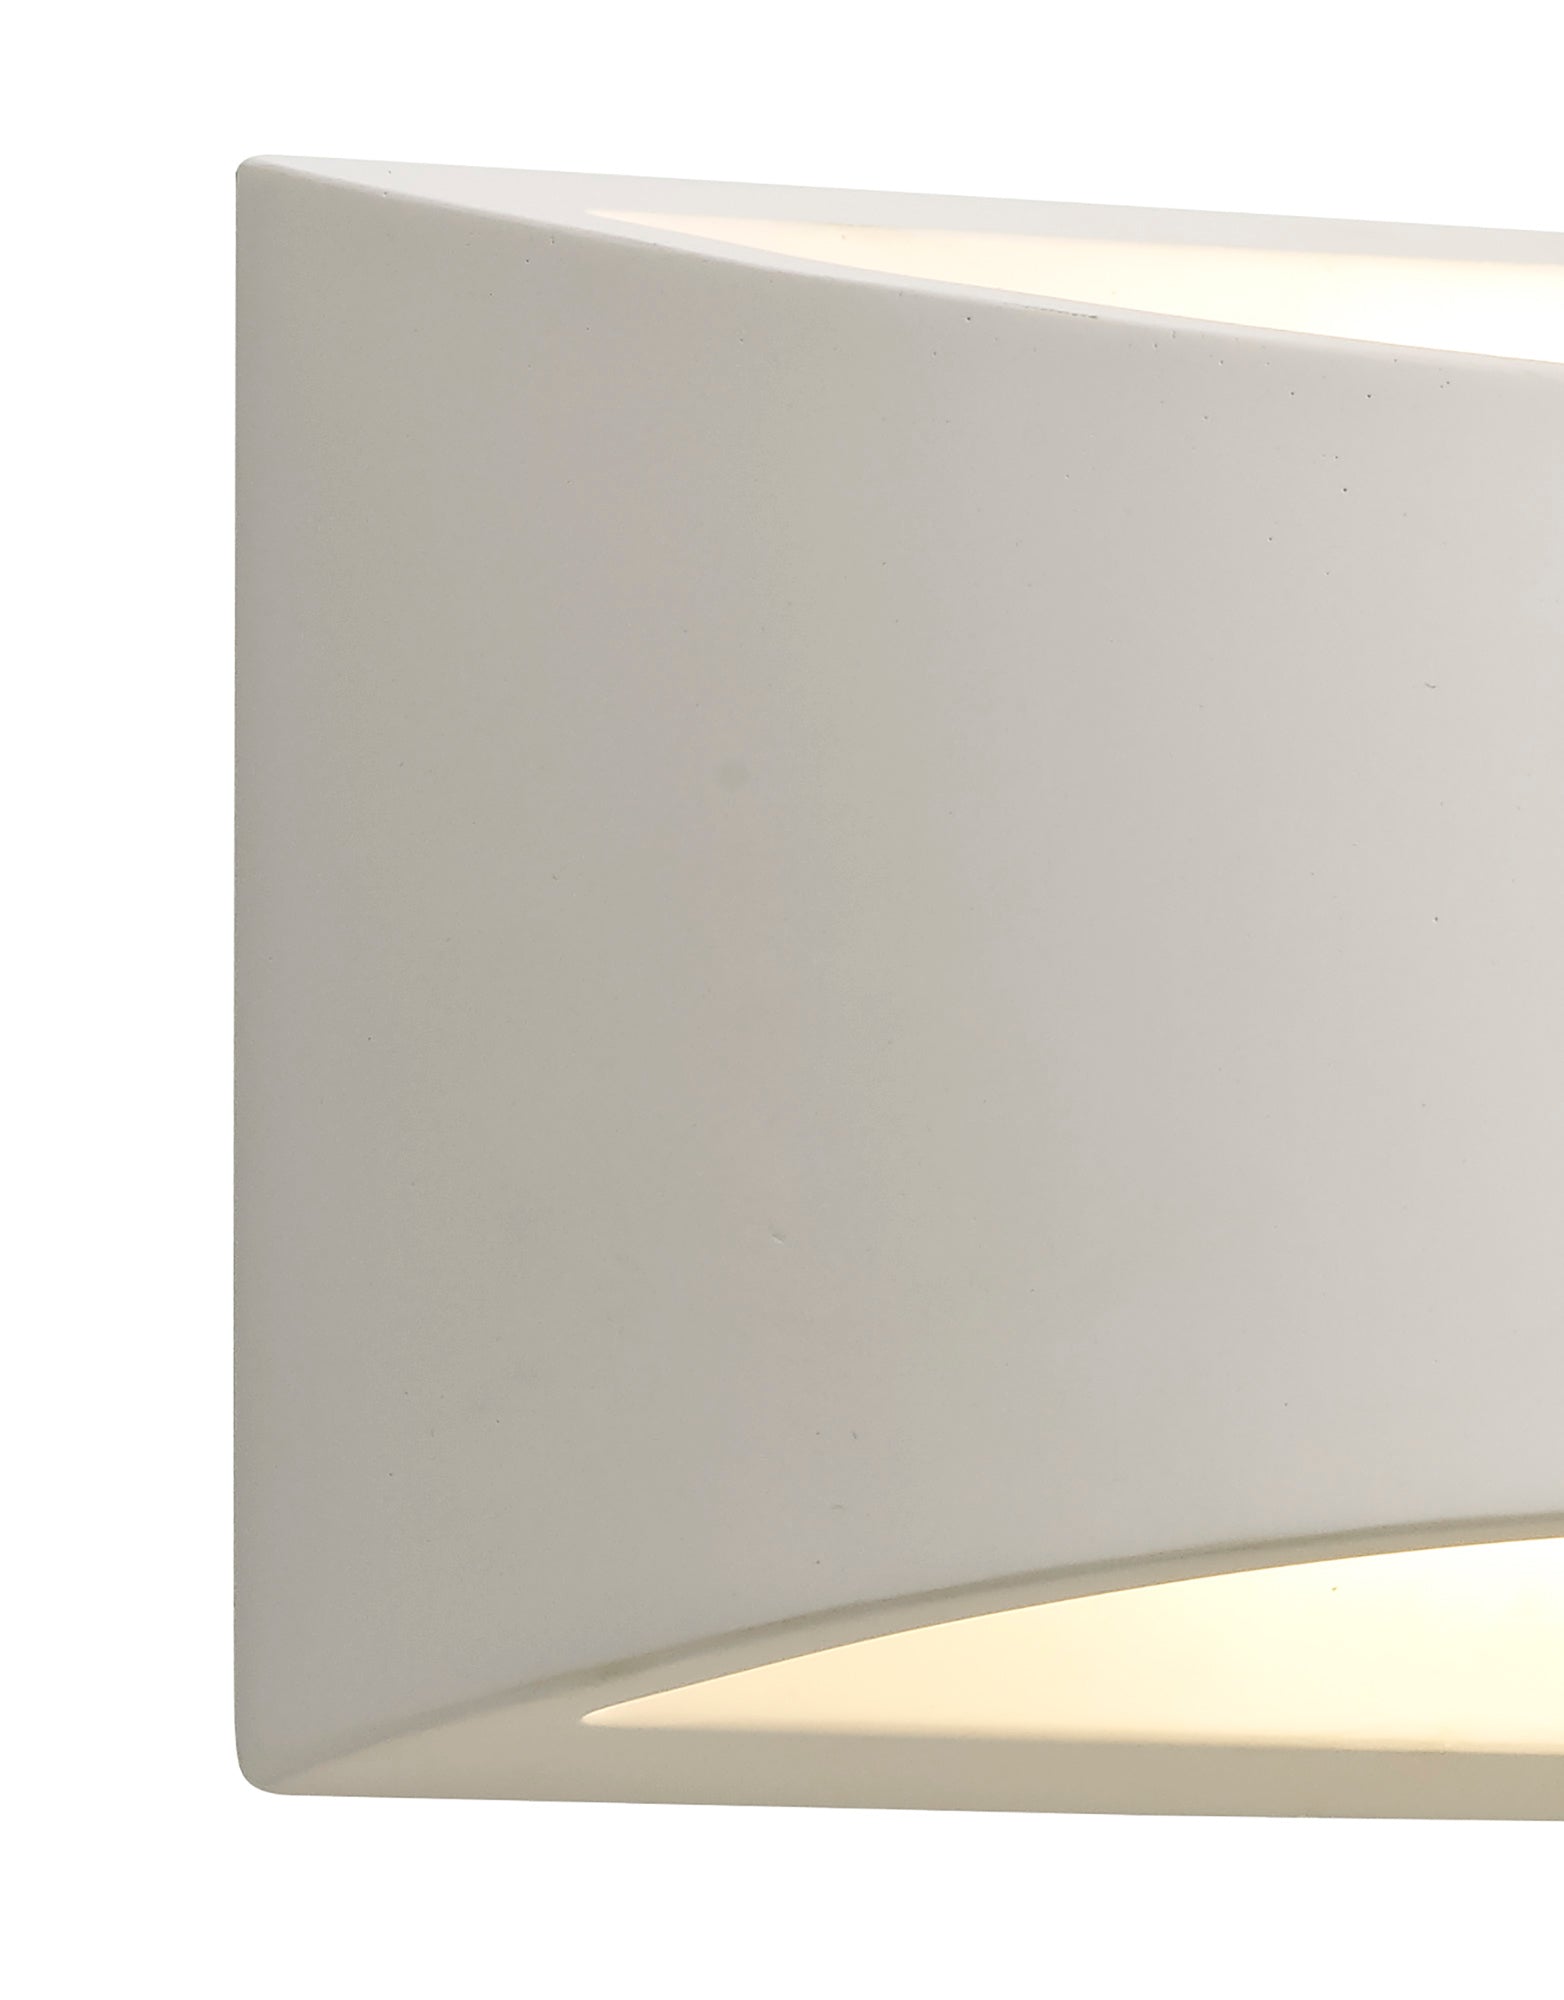 Plastin Rectangular Wall Lamp, 1 x G9, White Paintable Gypsum